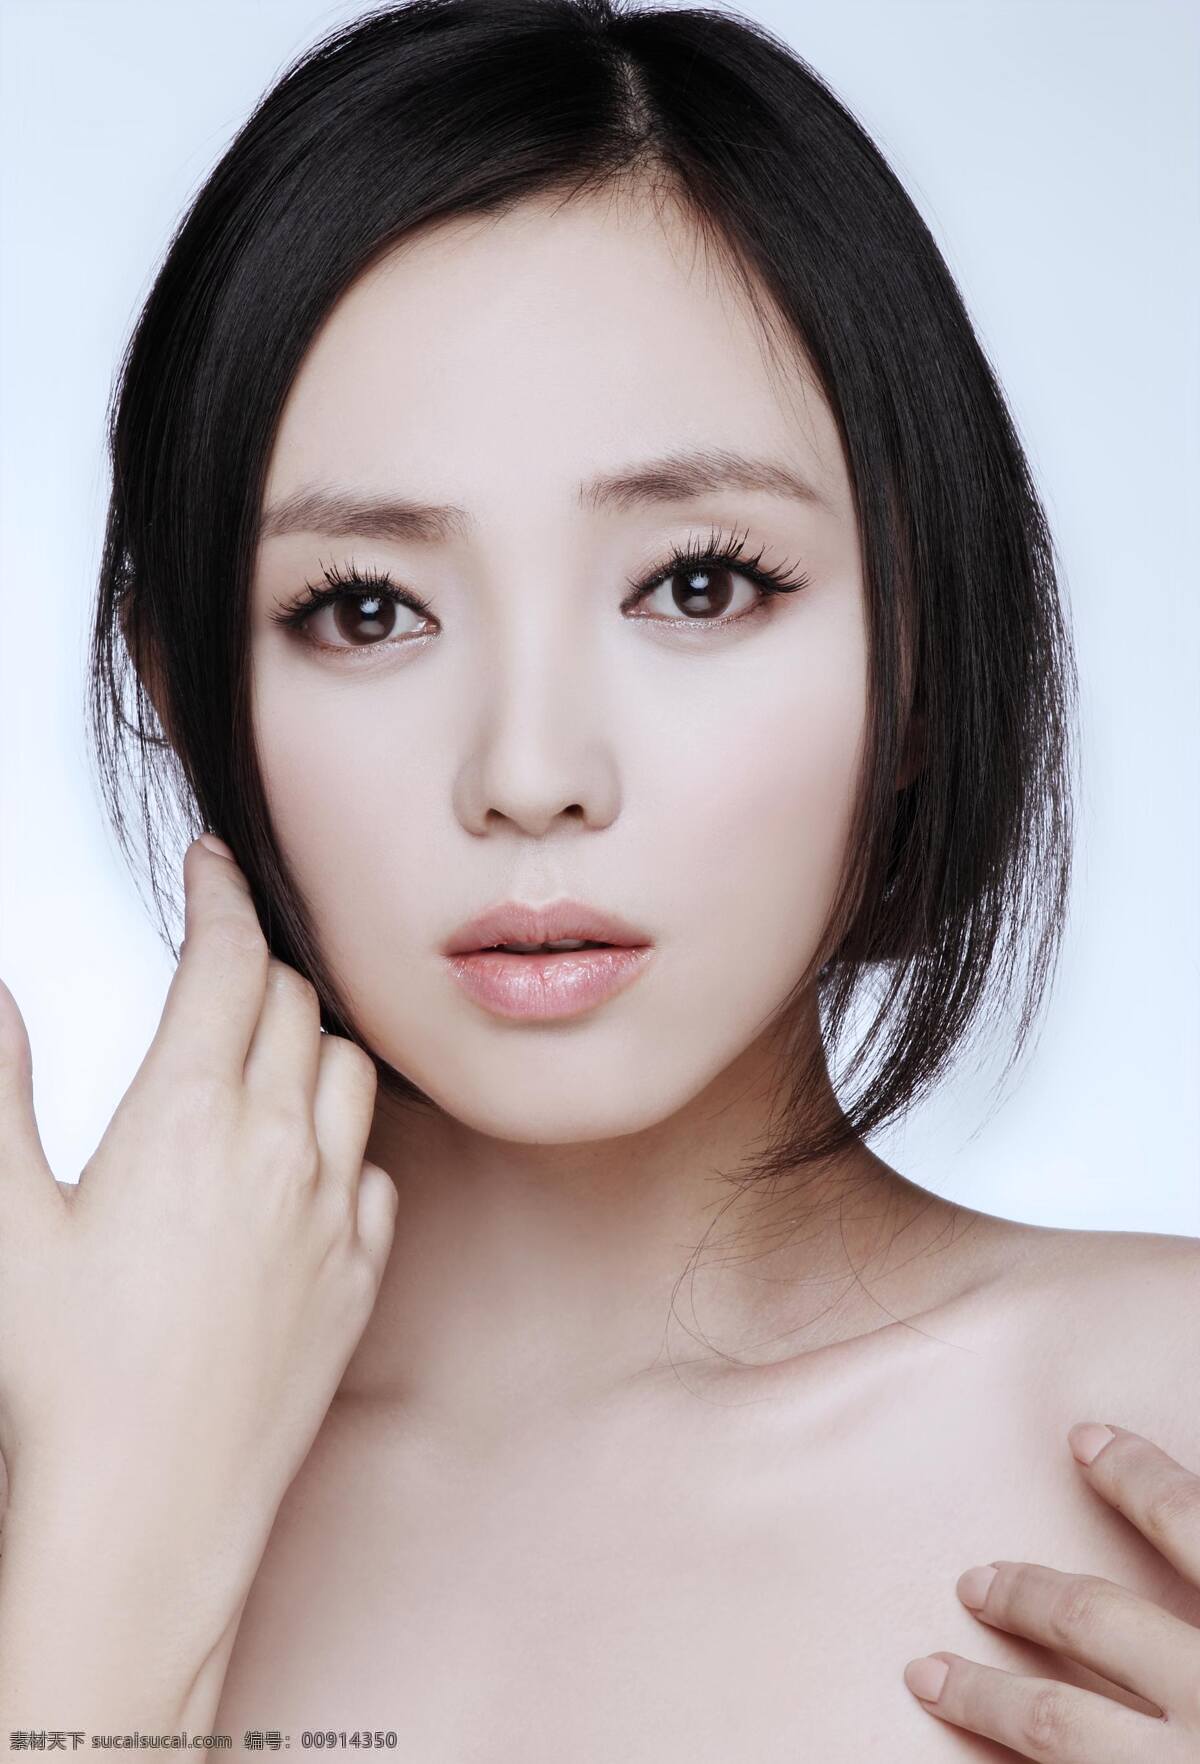 陶慧 中国 大陆 女演员 模特 美丽 性感 明星偶像 人物图库